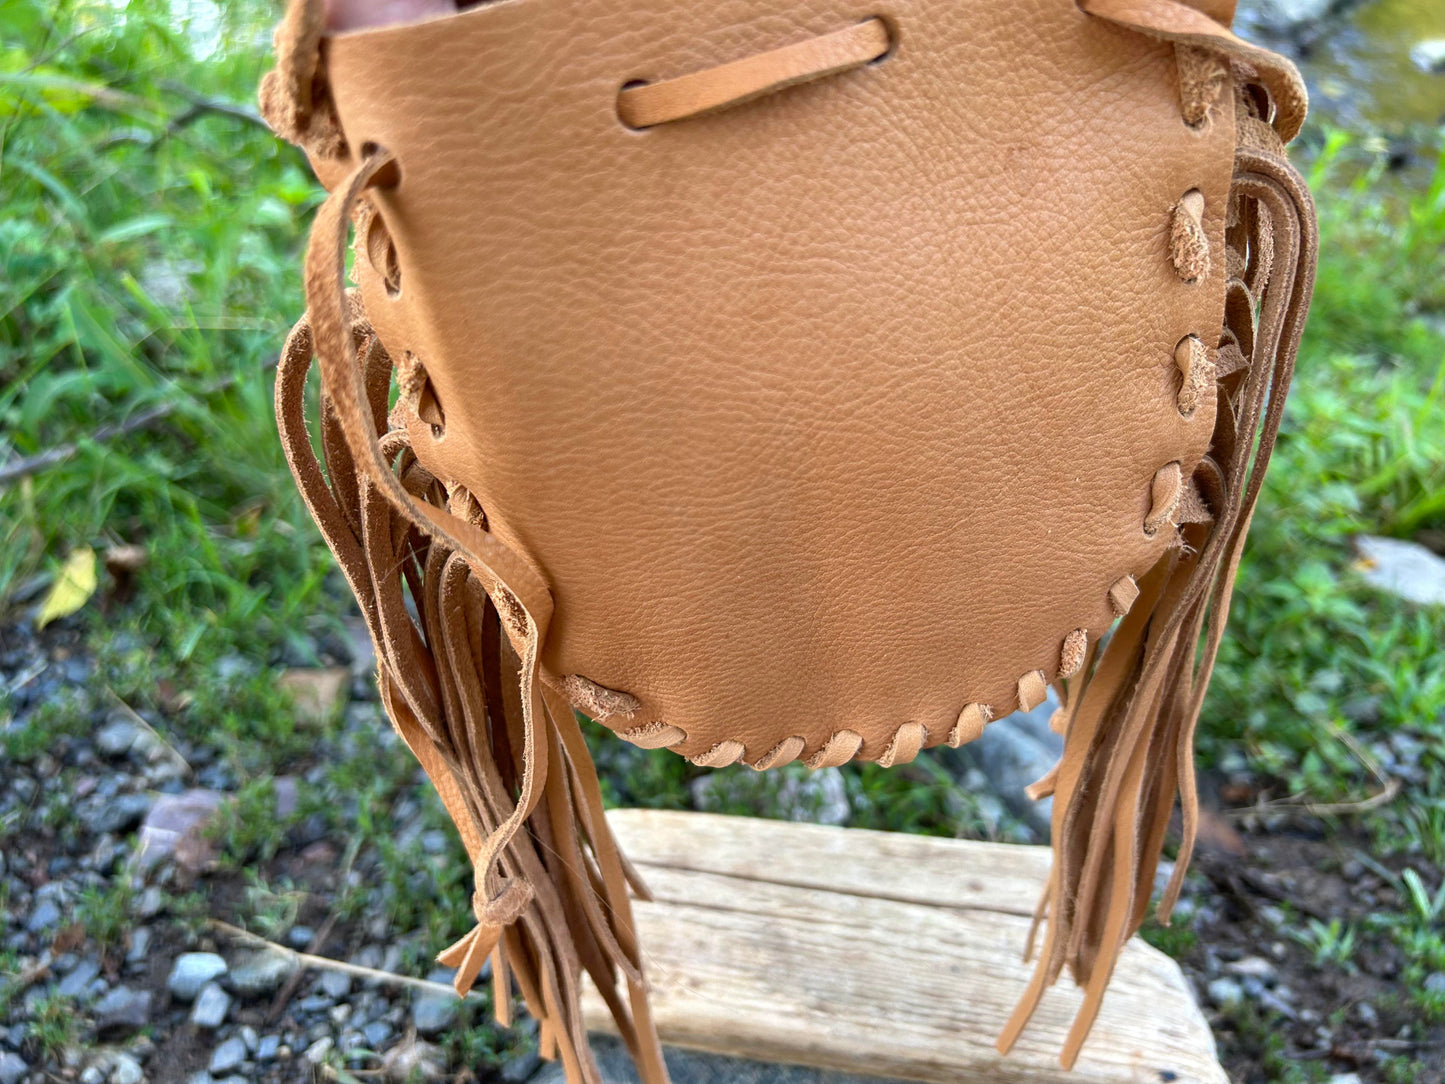 Leather Fringe Hand Bag